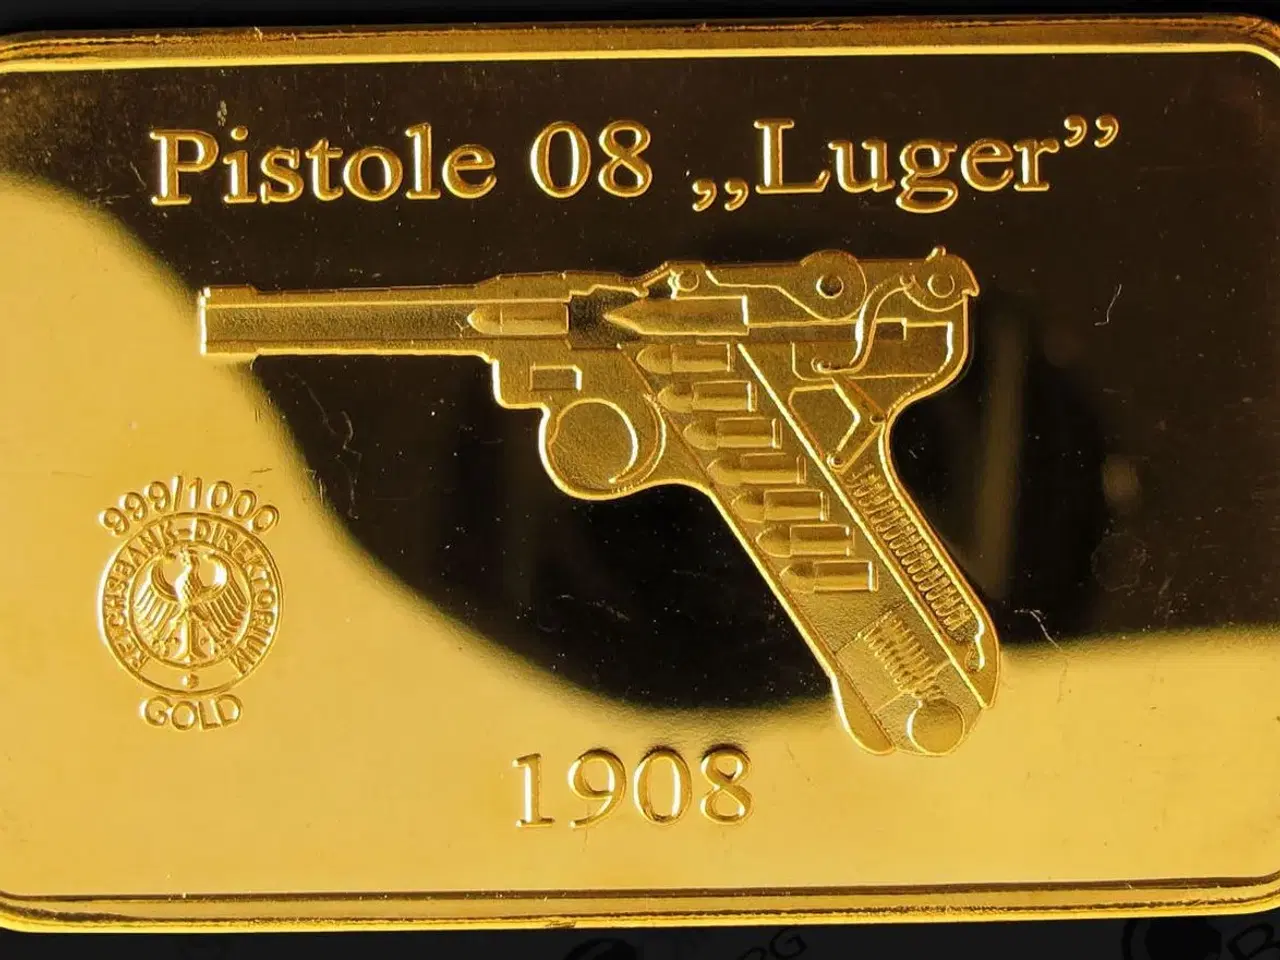 Billede 1 - Tyskland LUGER pistolen